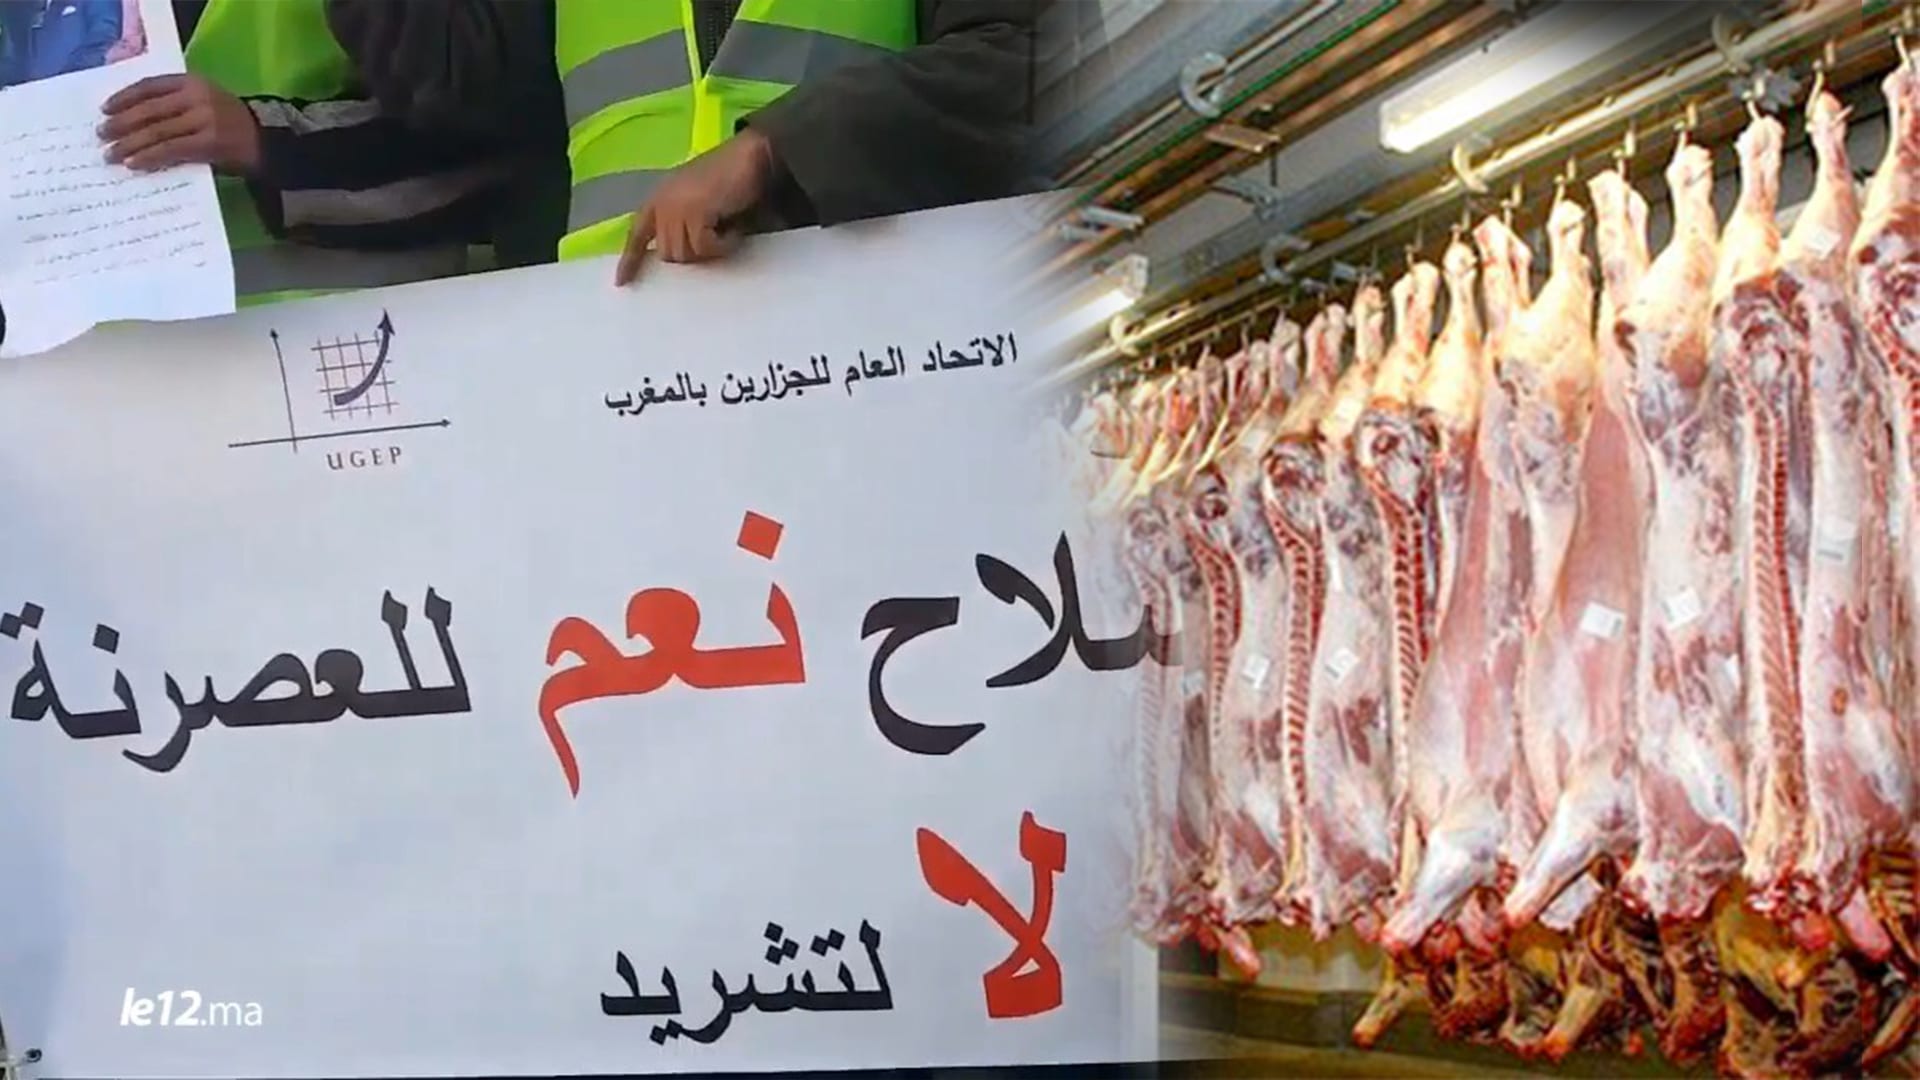 بائعو اللحوم الحمراء يحتجّون أمام البرلمان على إغلاق مجموعة من المذابح